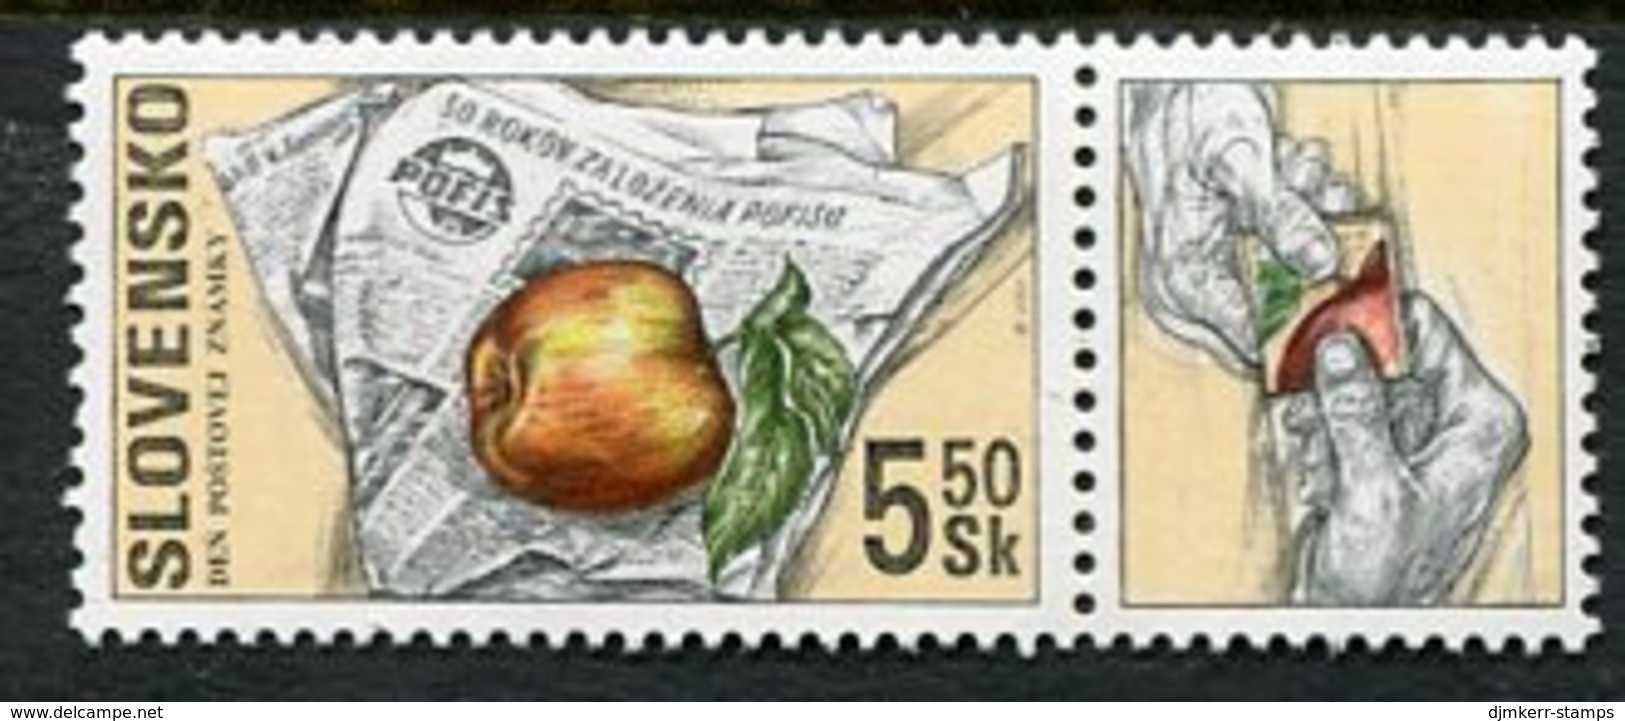 SLOVAKIA 2000 Stamp Day MNH / **  Michel 383 - Nuovi